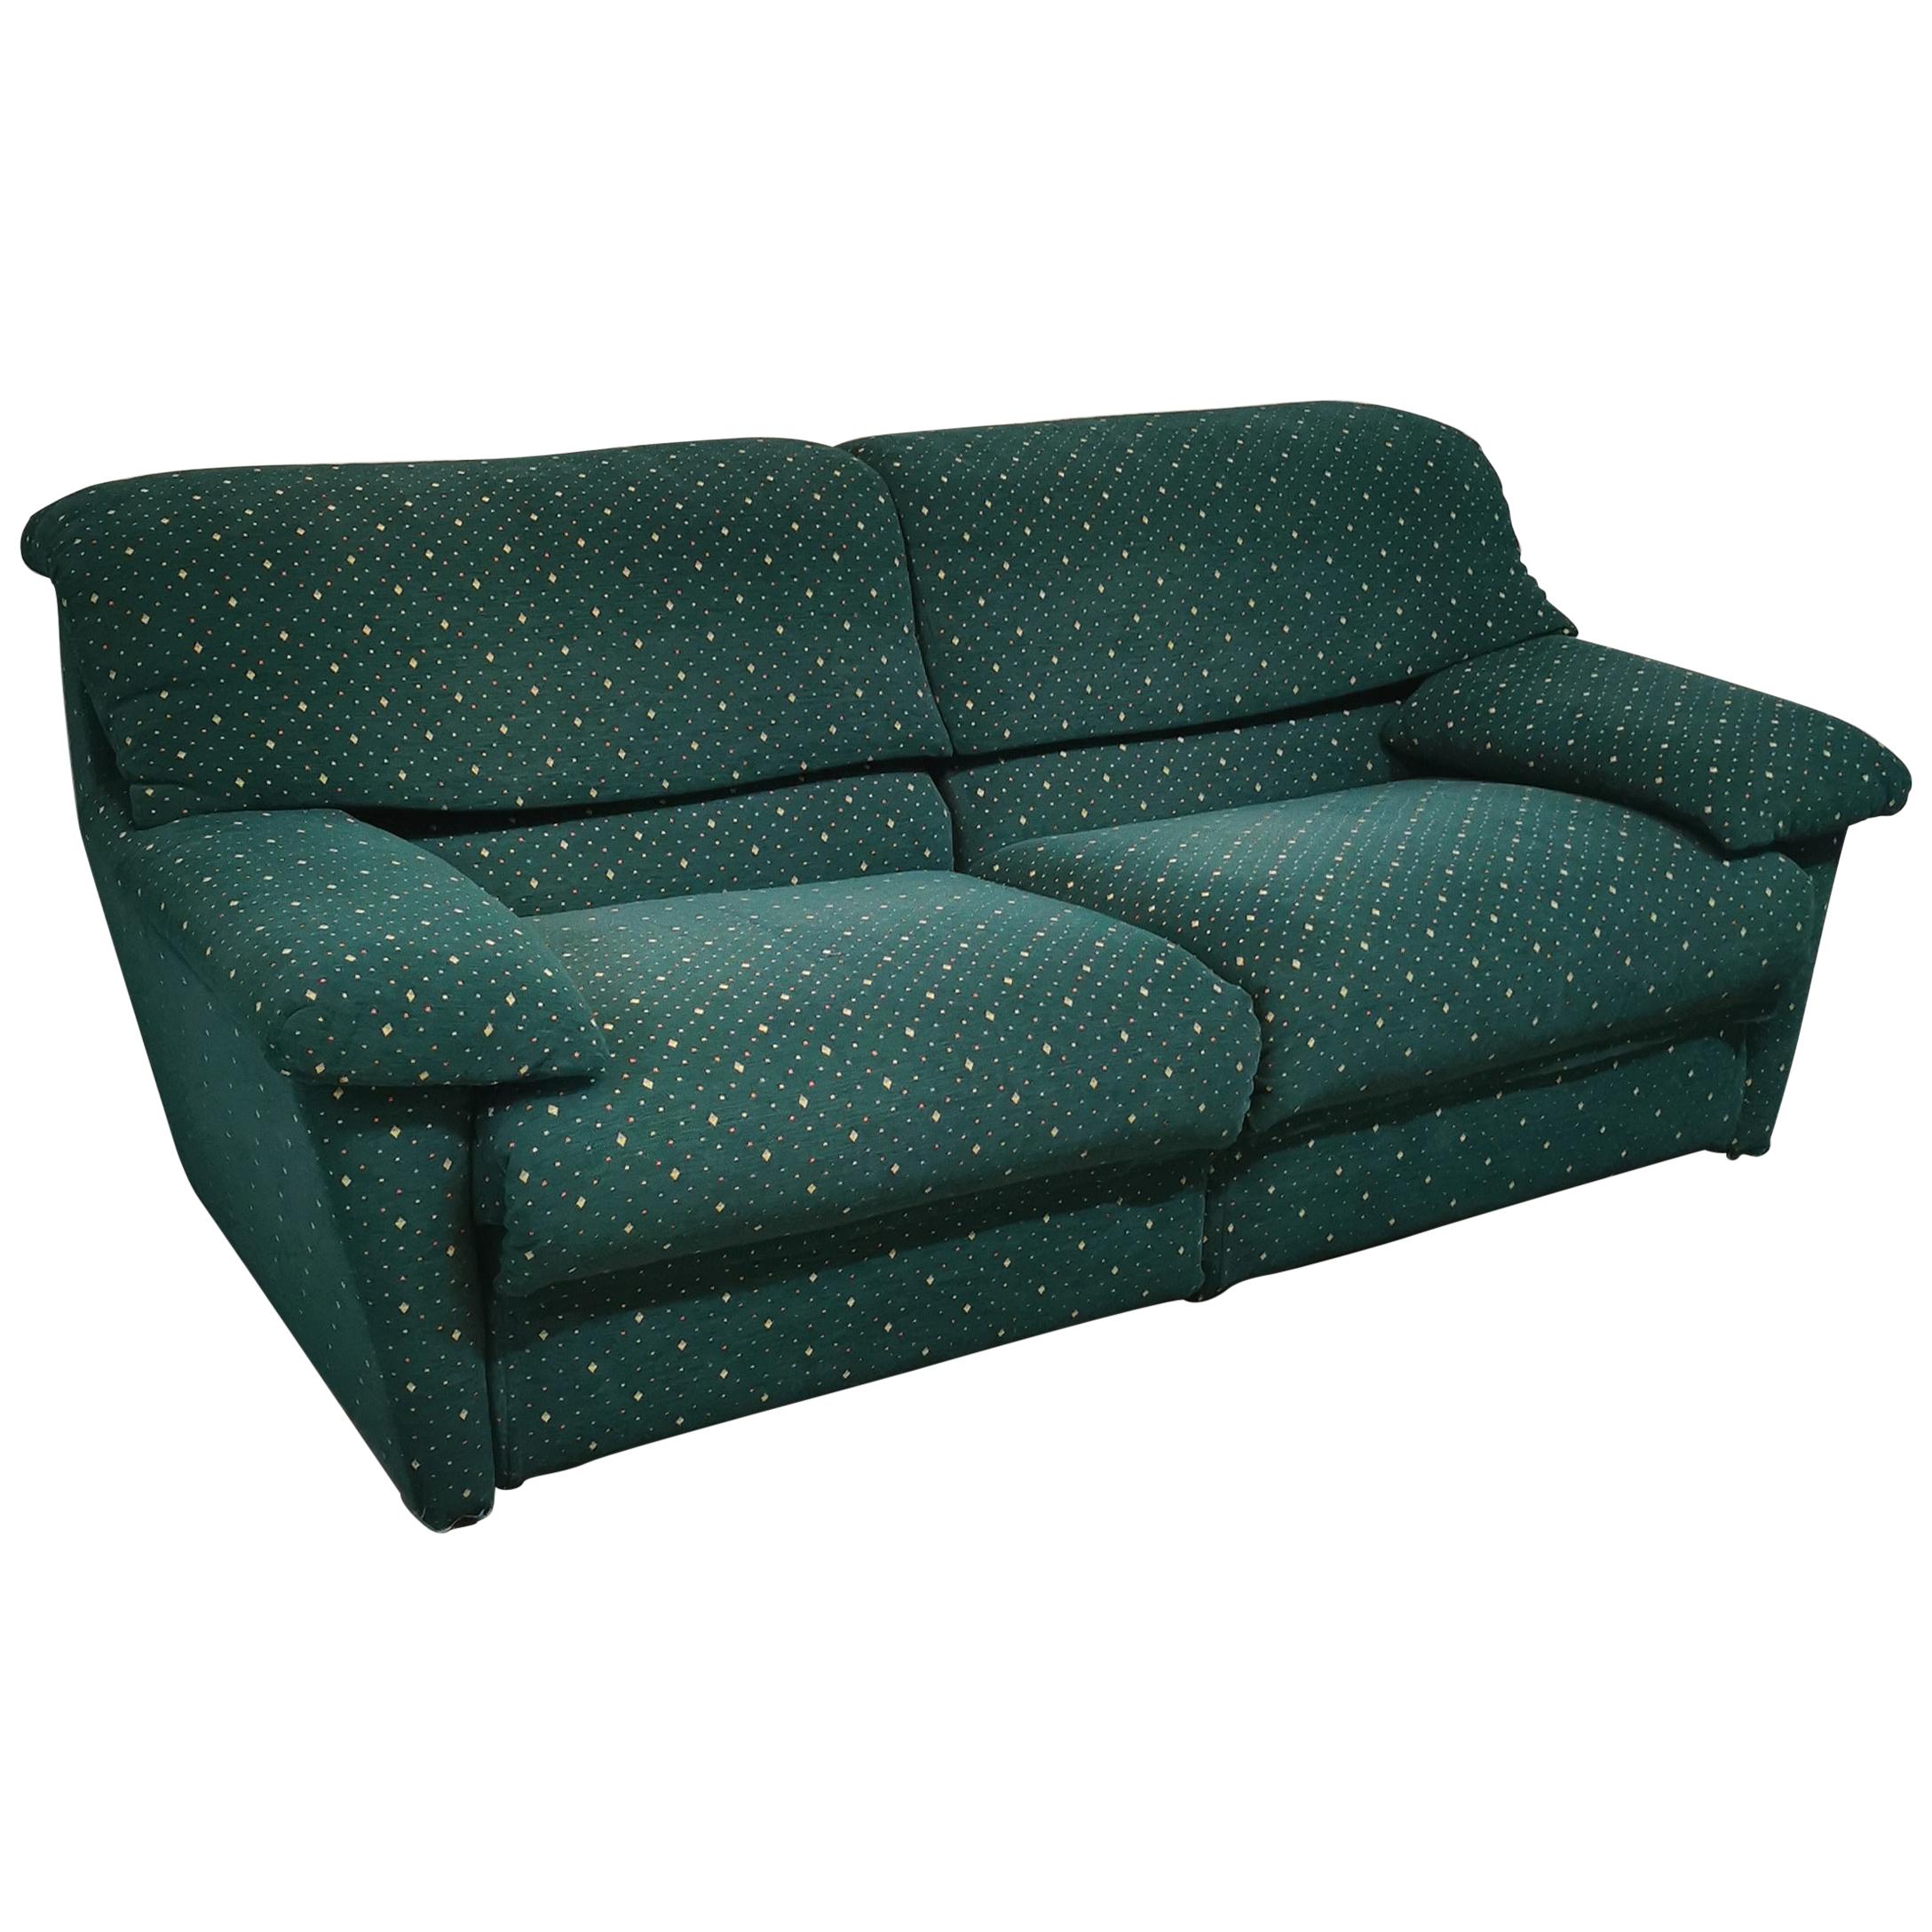  Sofa Green Velvet 3 Seat by Pol 74 Postmodern Italian Design 1990s